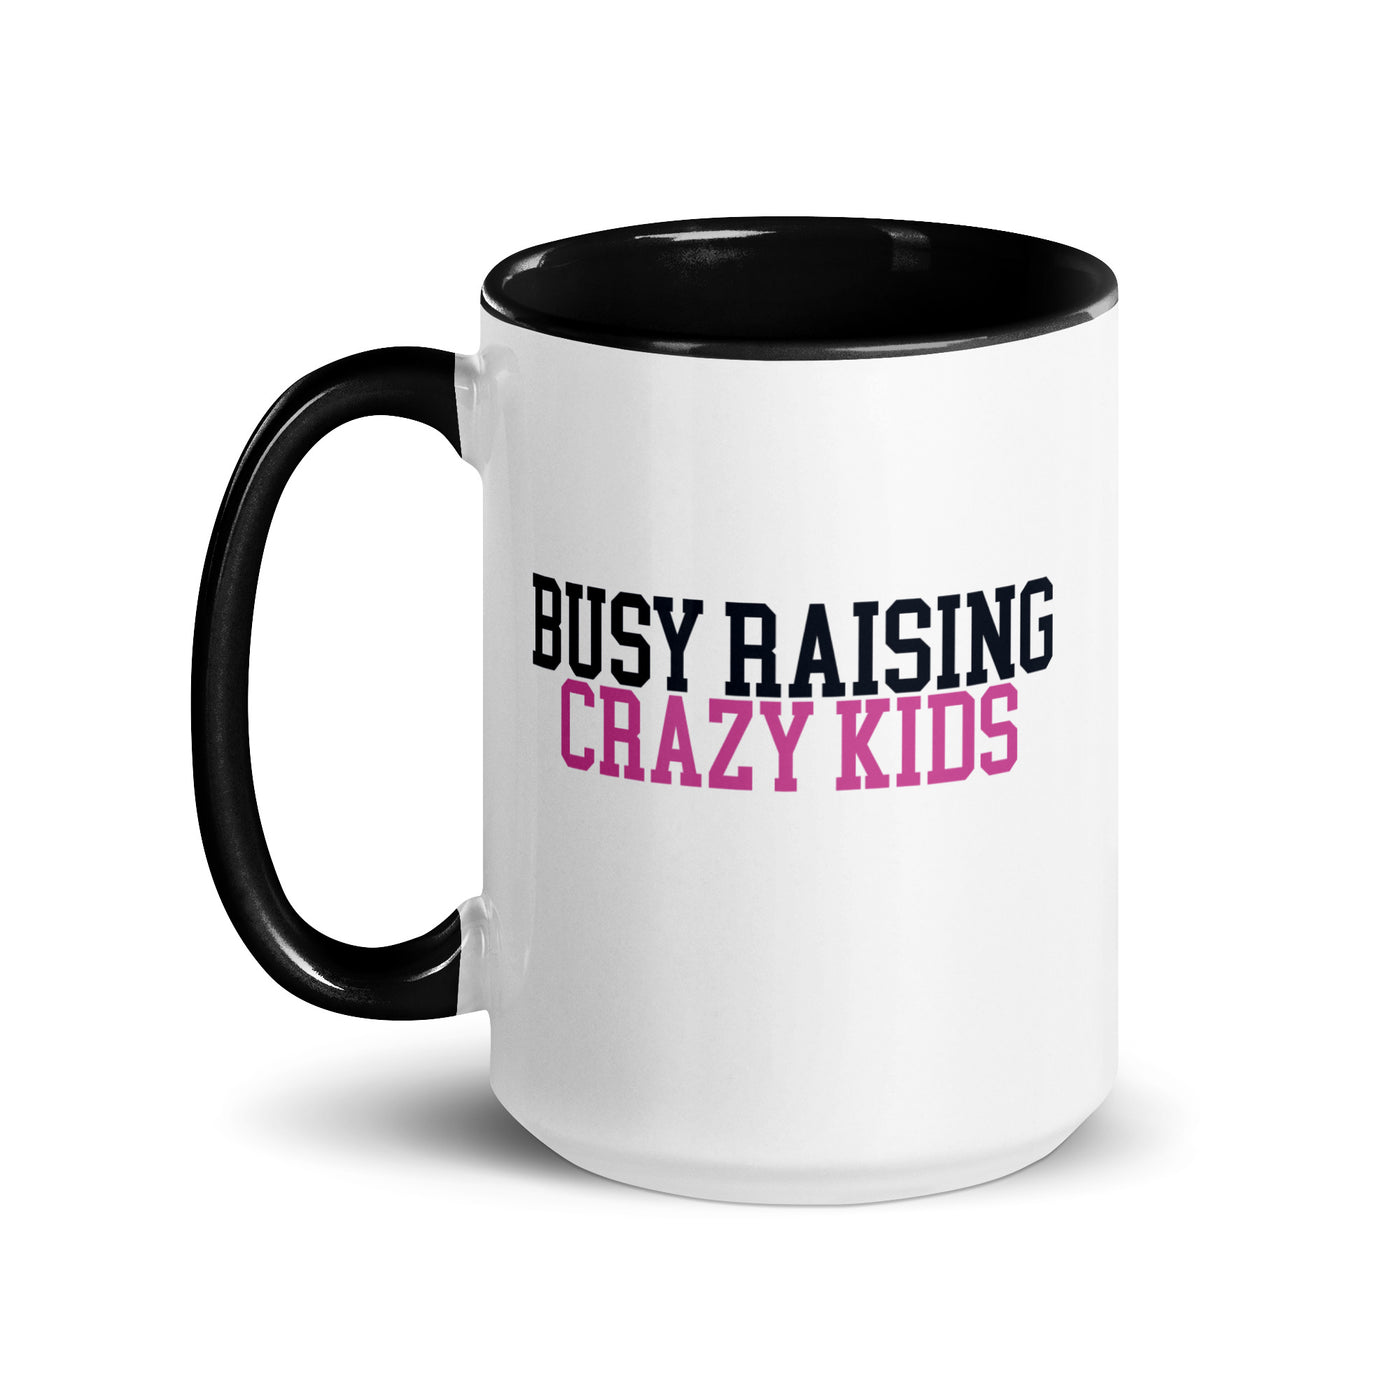 Make It Yours™ 'Busy Raising' Coffee Mug